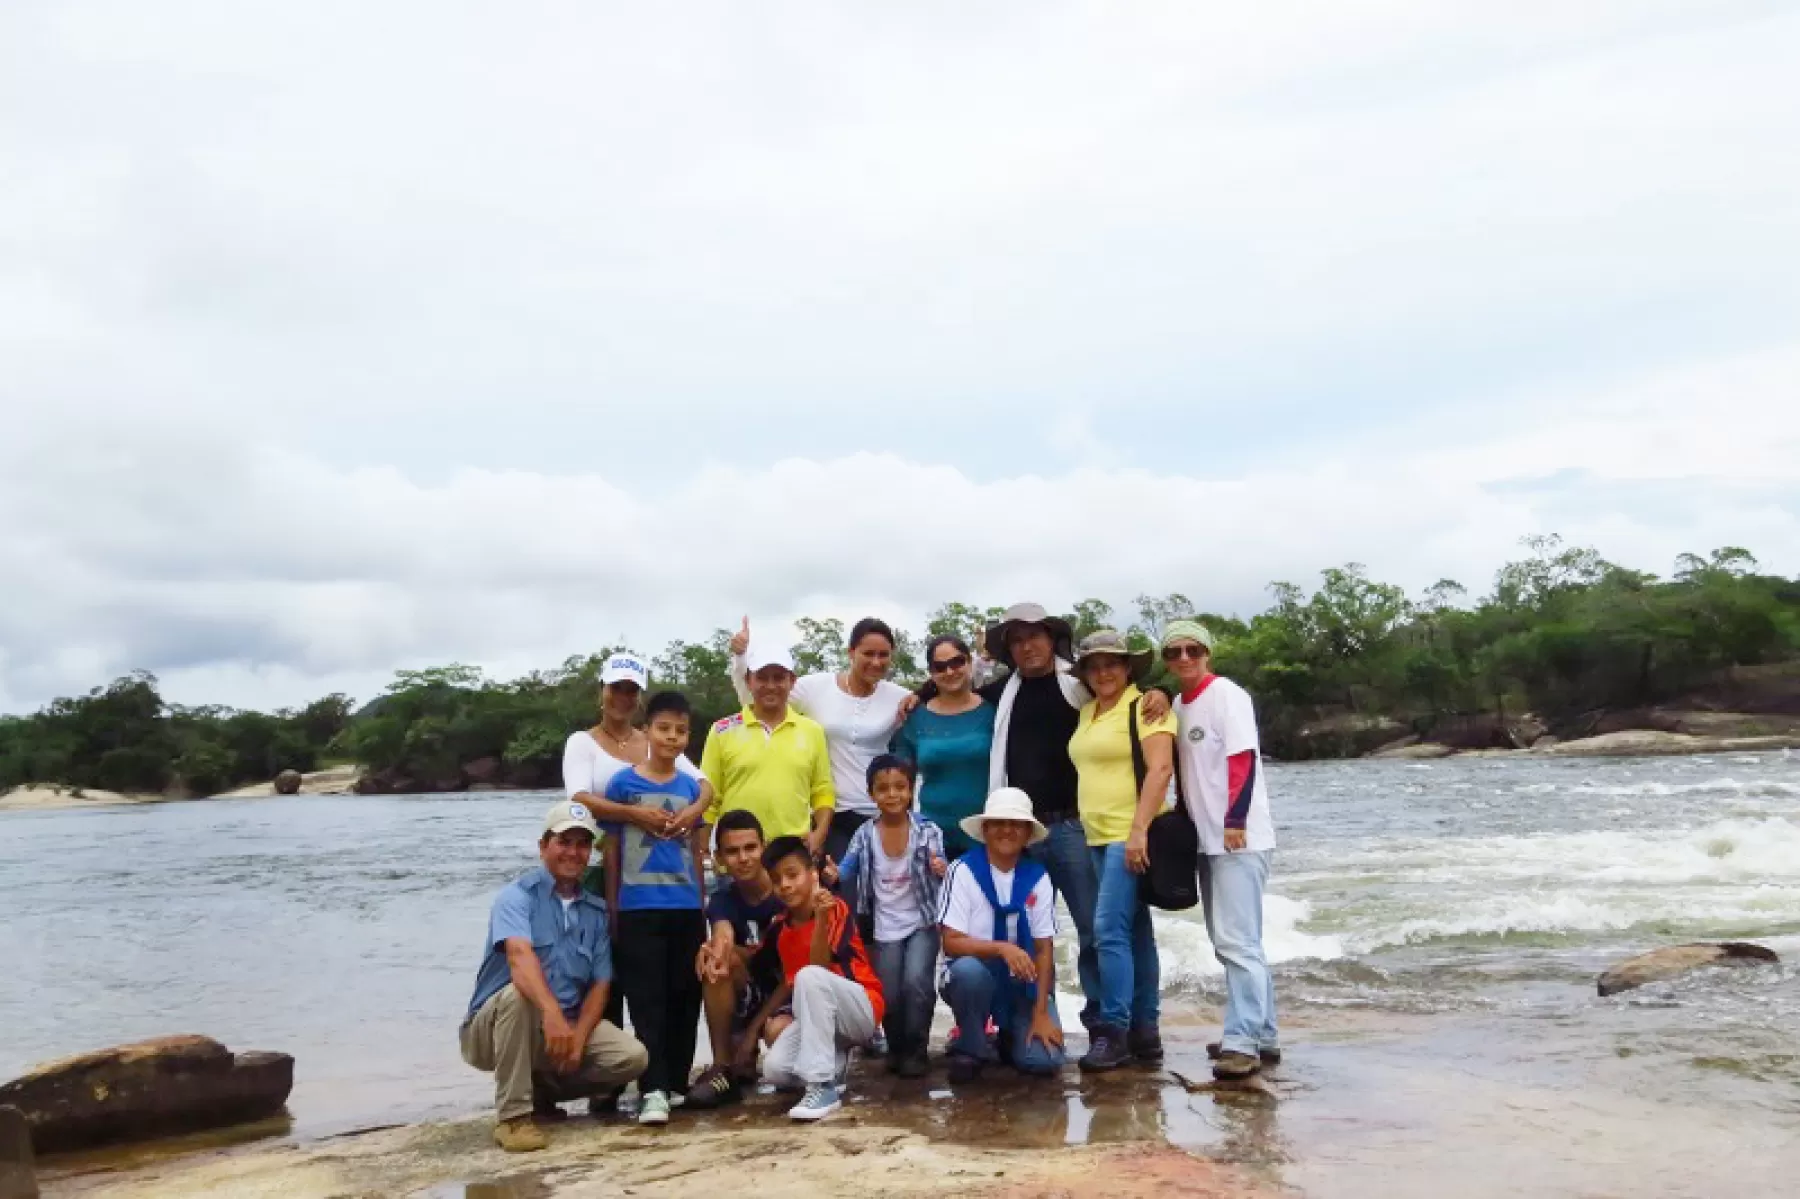 10 docentes de la Institución Educativa Antonia Santos de Cazuarito visitaron por 3 días esta área protegida de la Orinoquia colombiana.